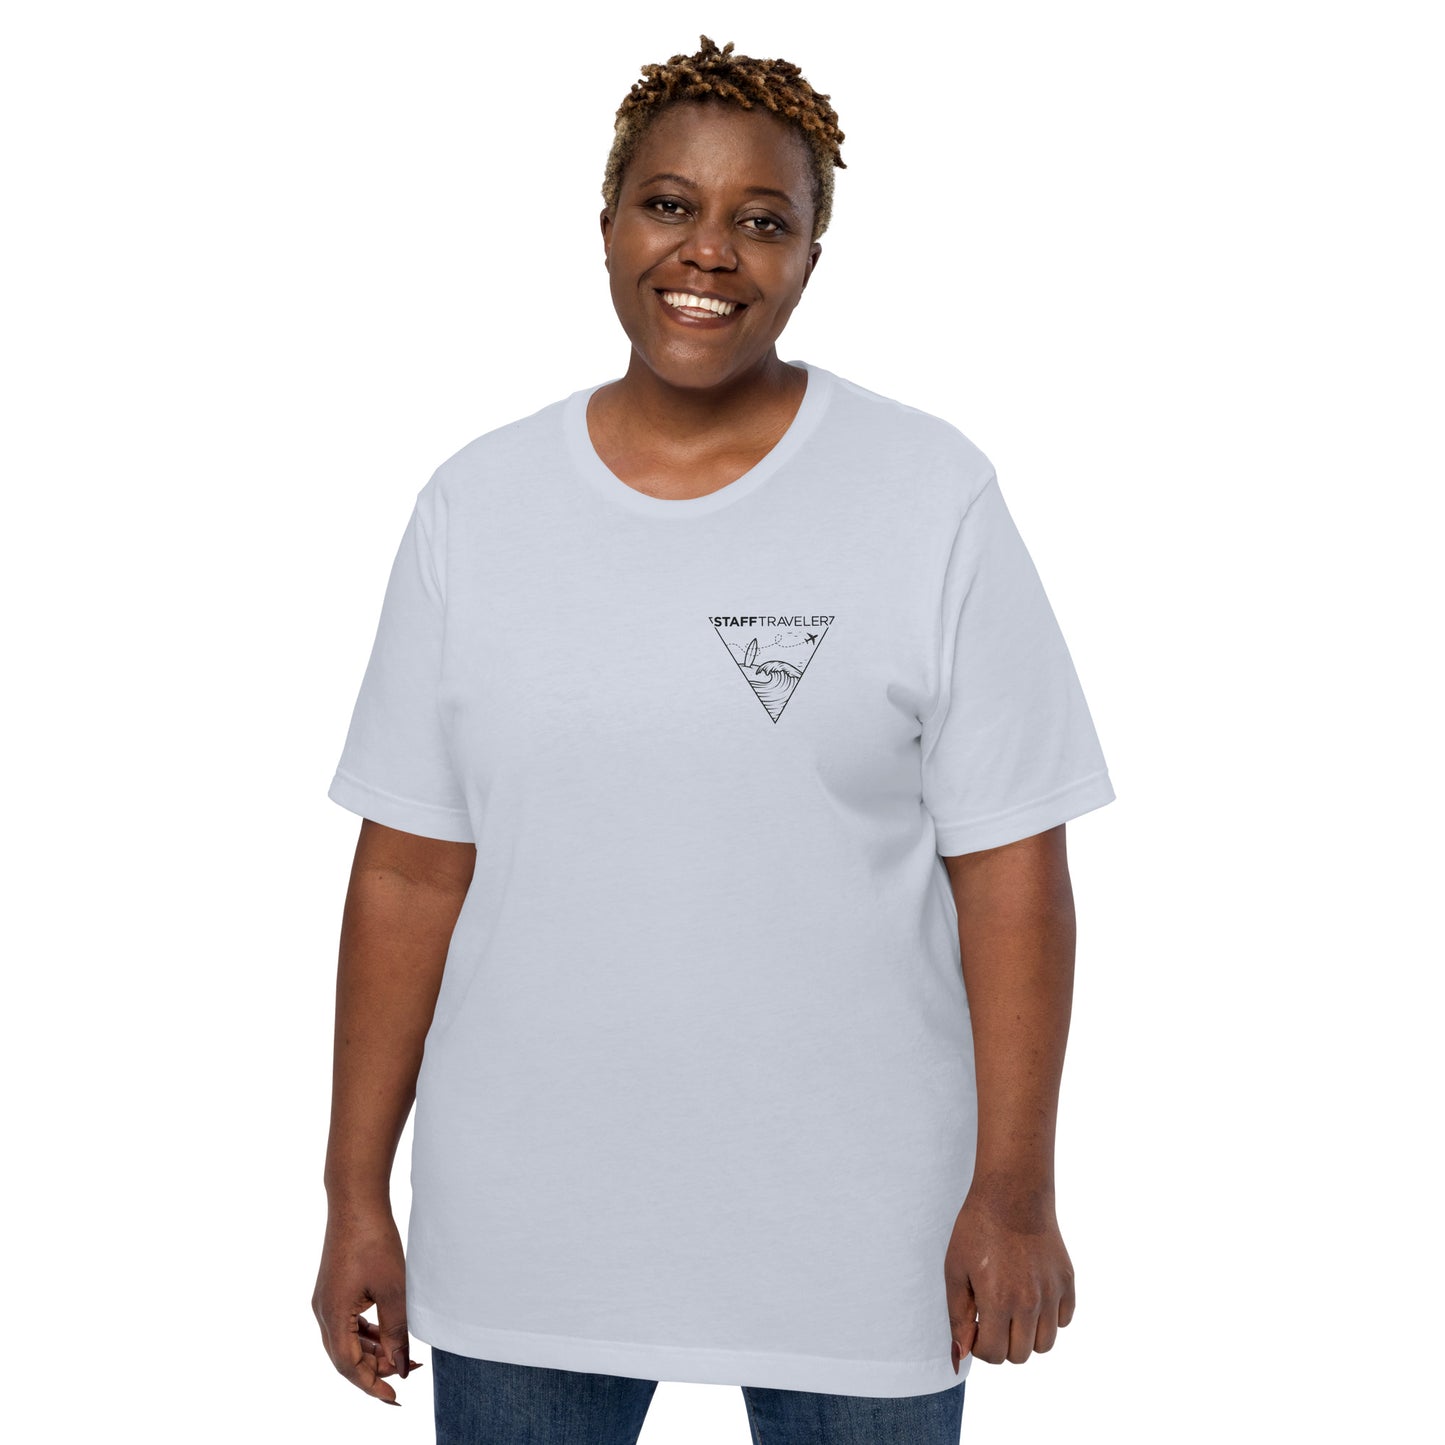 StaffTraveler Summer Triangle T-shirt